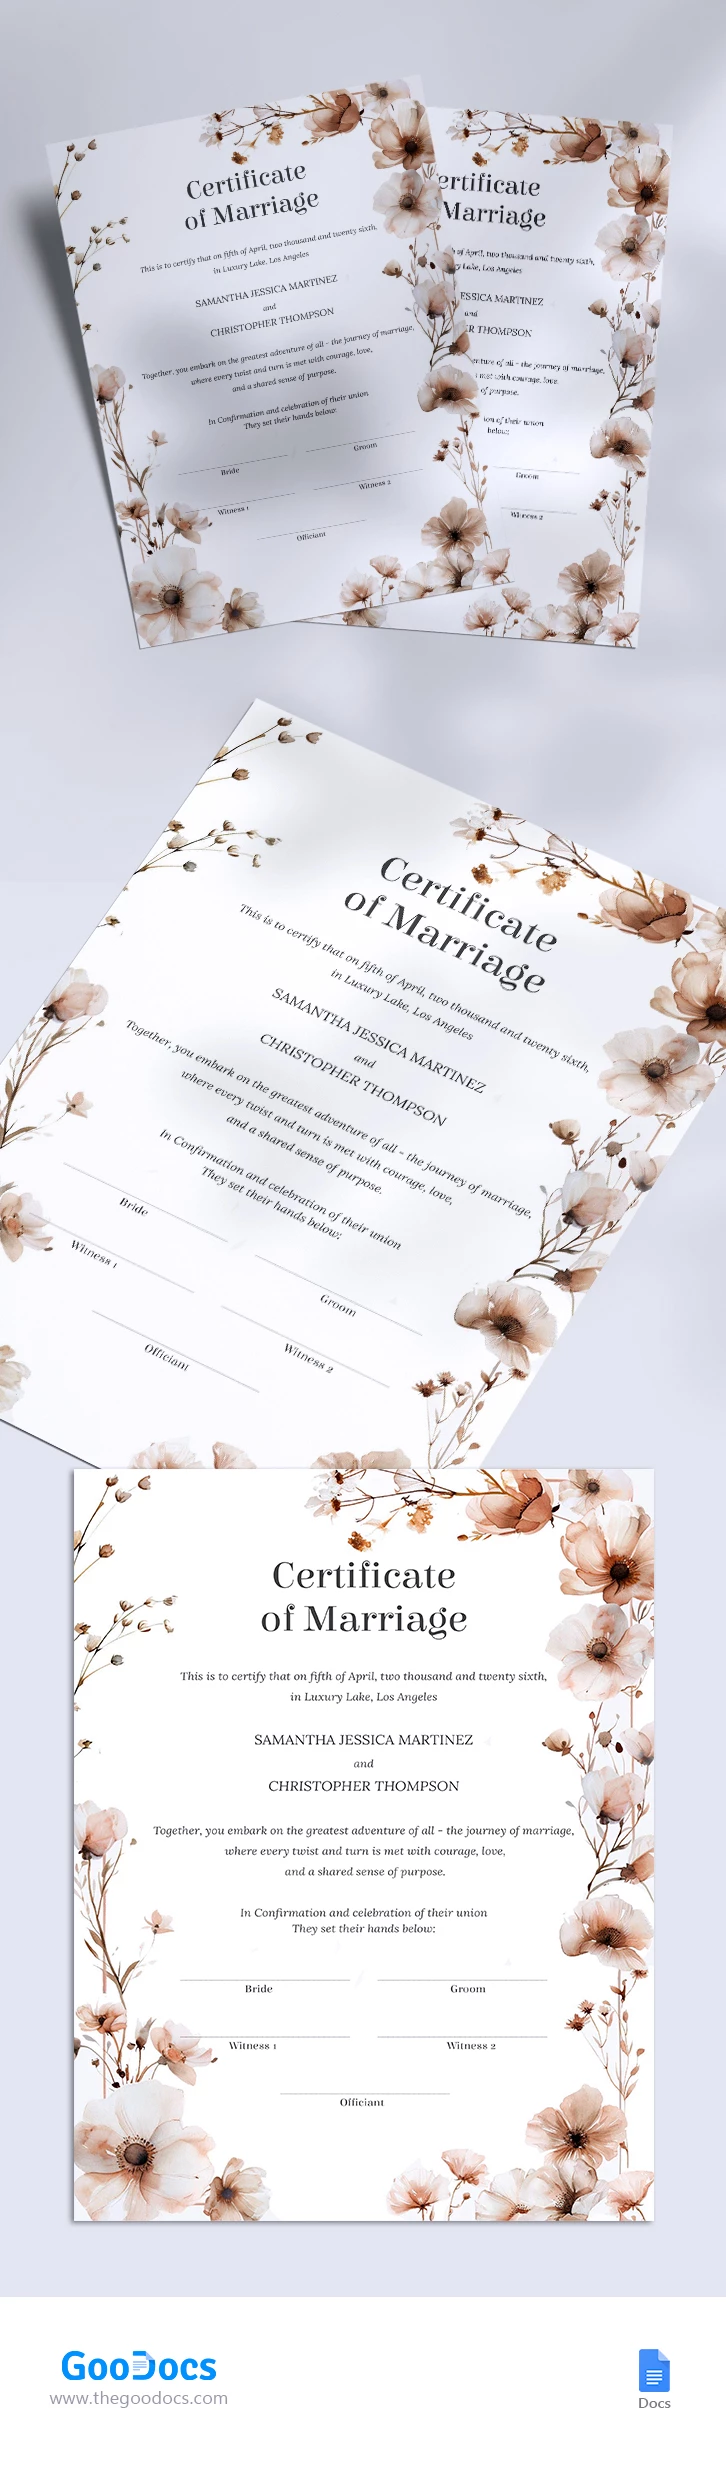 Certificado de Casamento - free Google Docs Template - 10068336